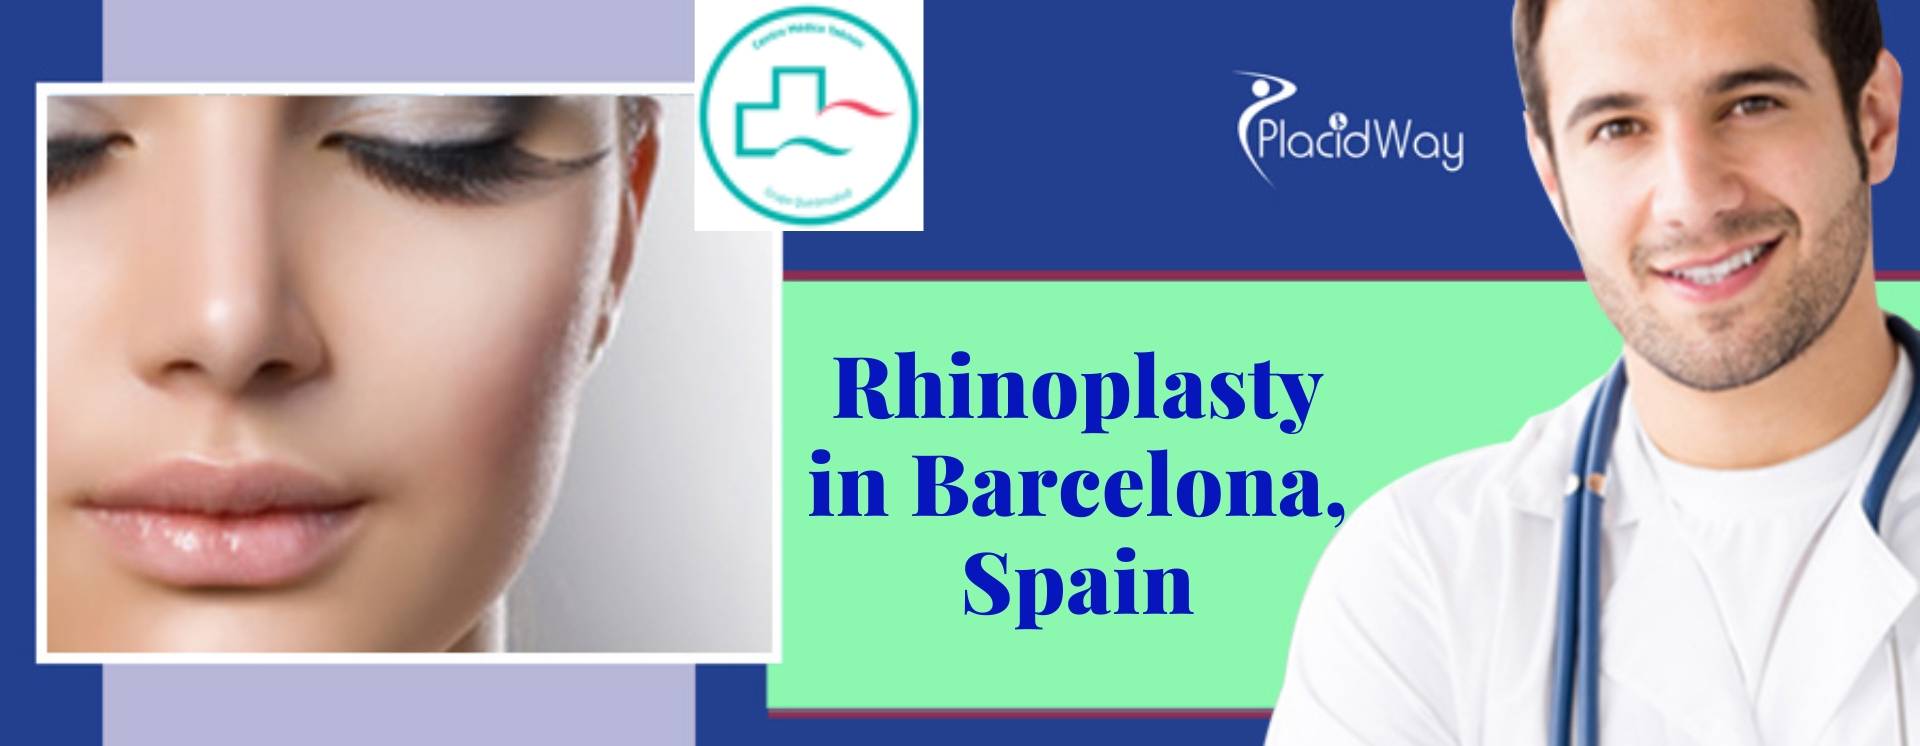 Rhinoplasty in Barcelona, Spain